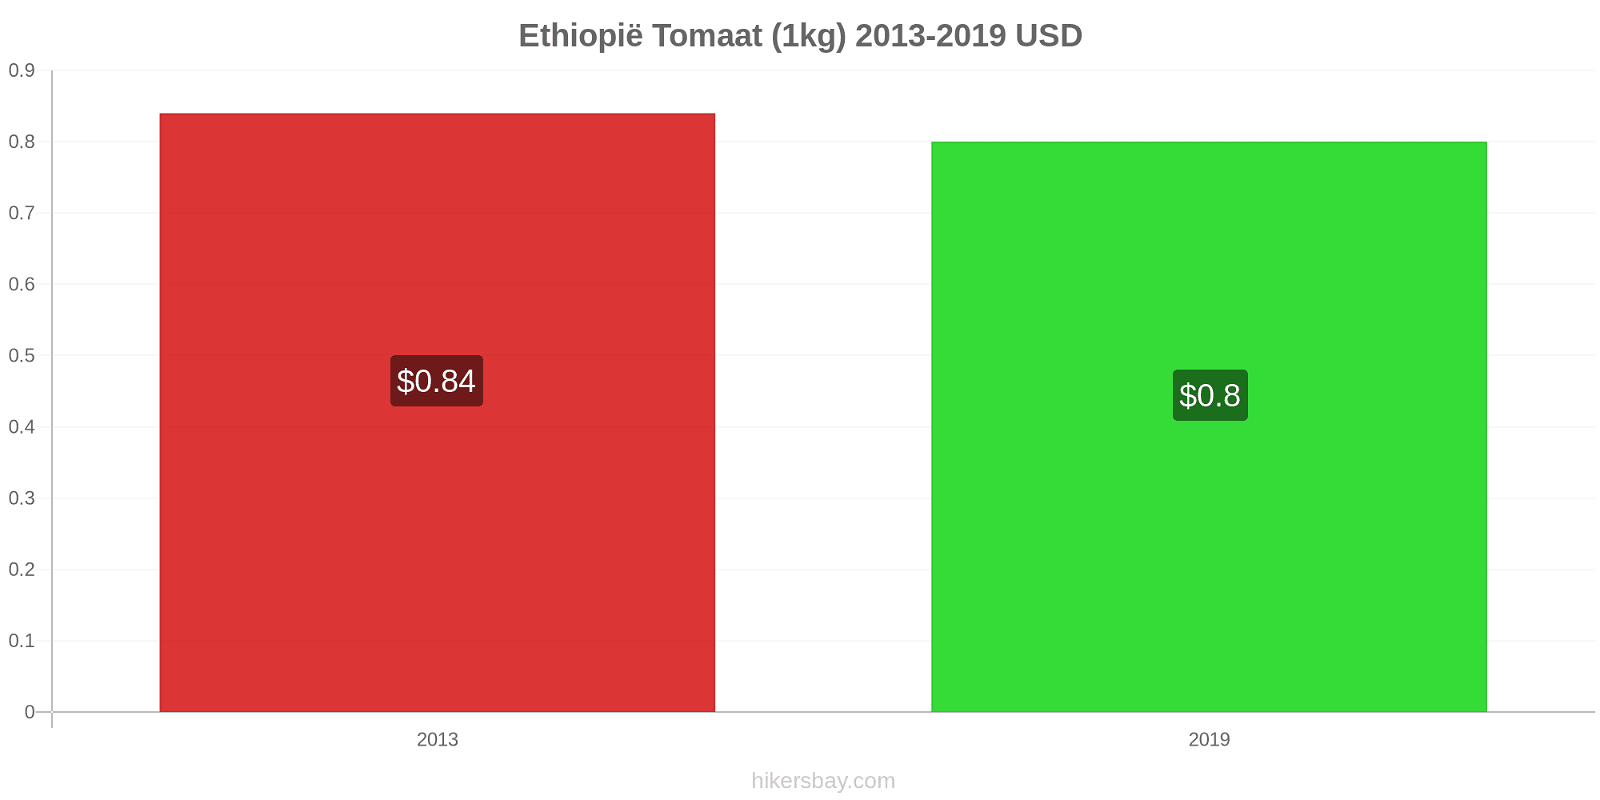 Ethiopië prijswijzigingen Tomaat (1kg) hikersbay.com